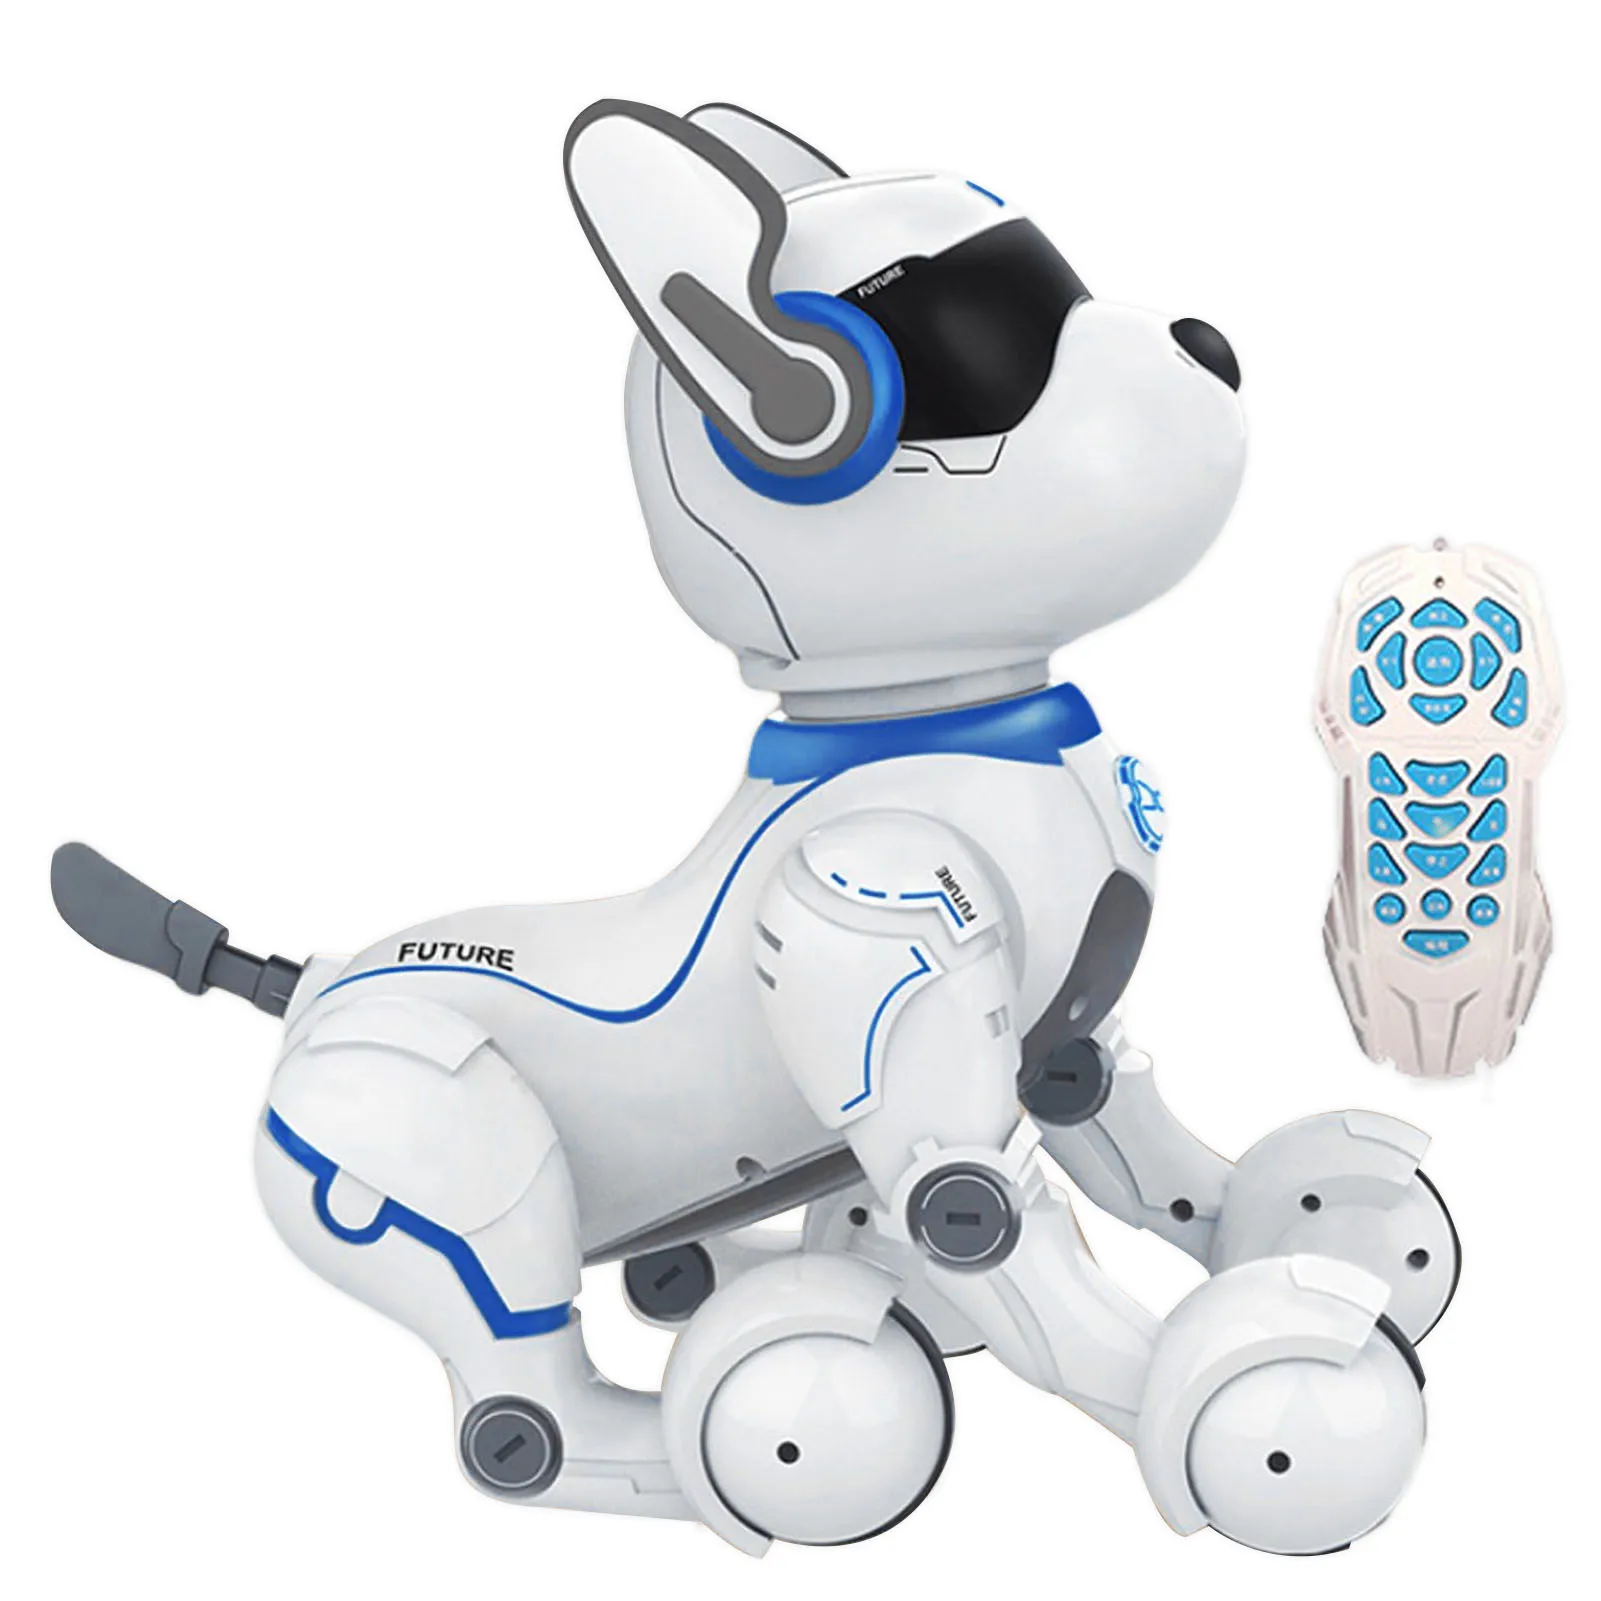 Robô de Controle Brinquedo do Cão Brinquedos para Crianças Brinquedos do Cão Remoto Dança Programação Bebê Aprendizagem Educação Interação Carregamento Usb Robô